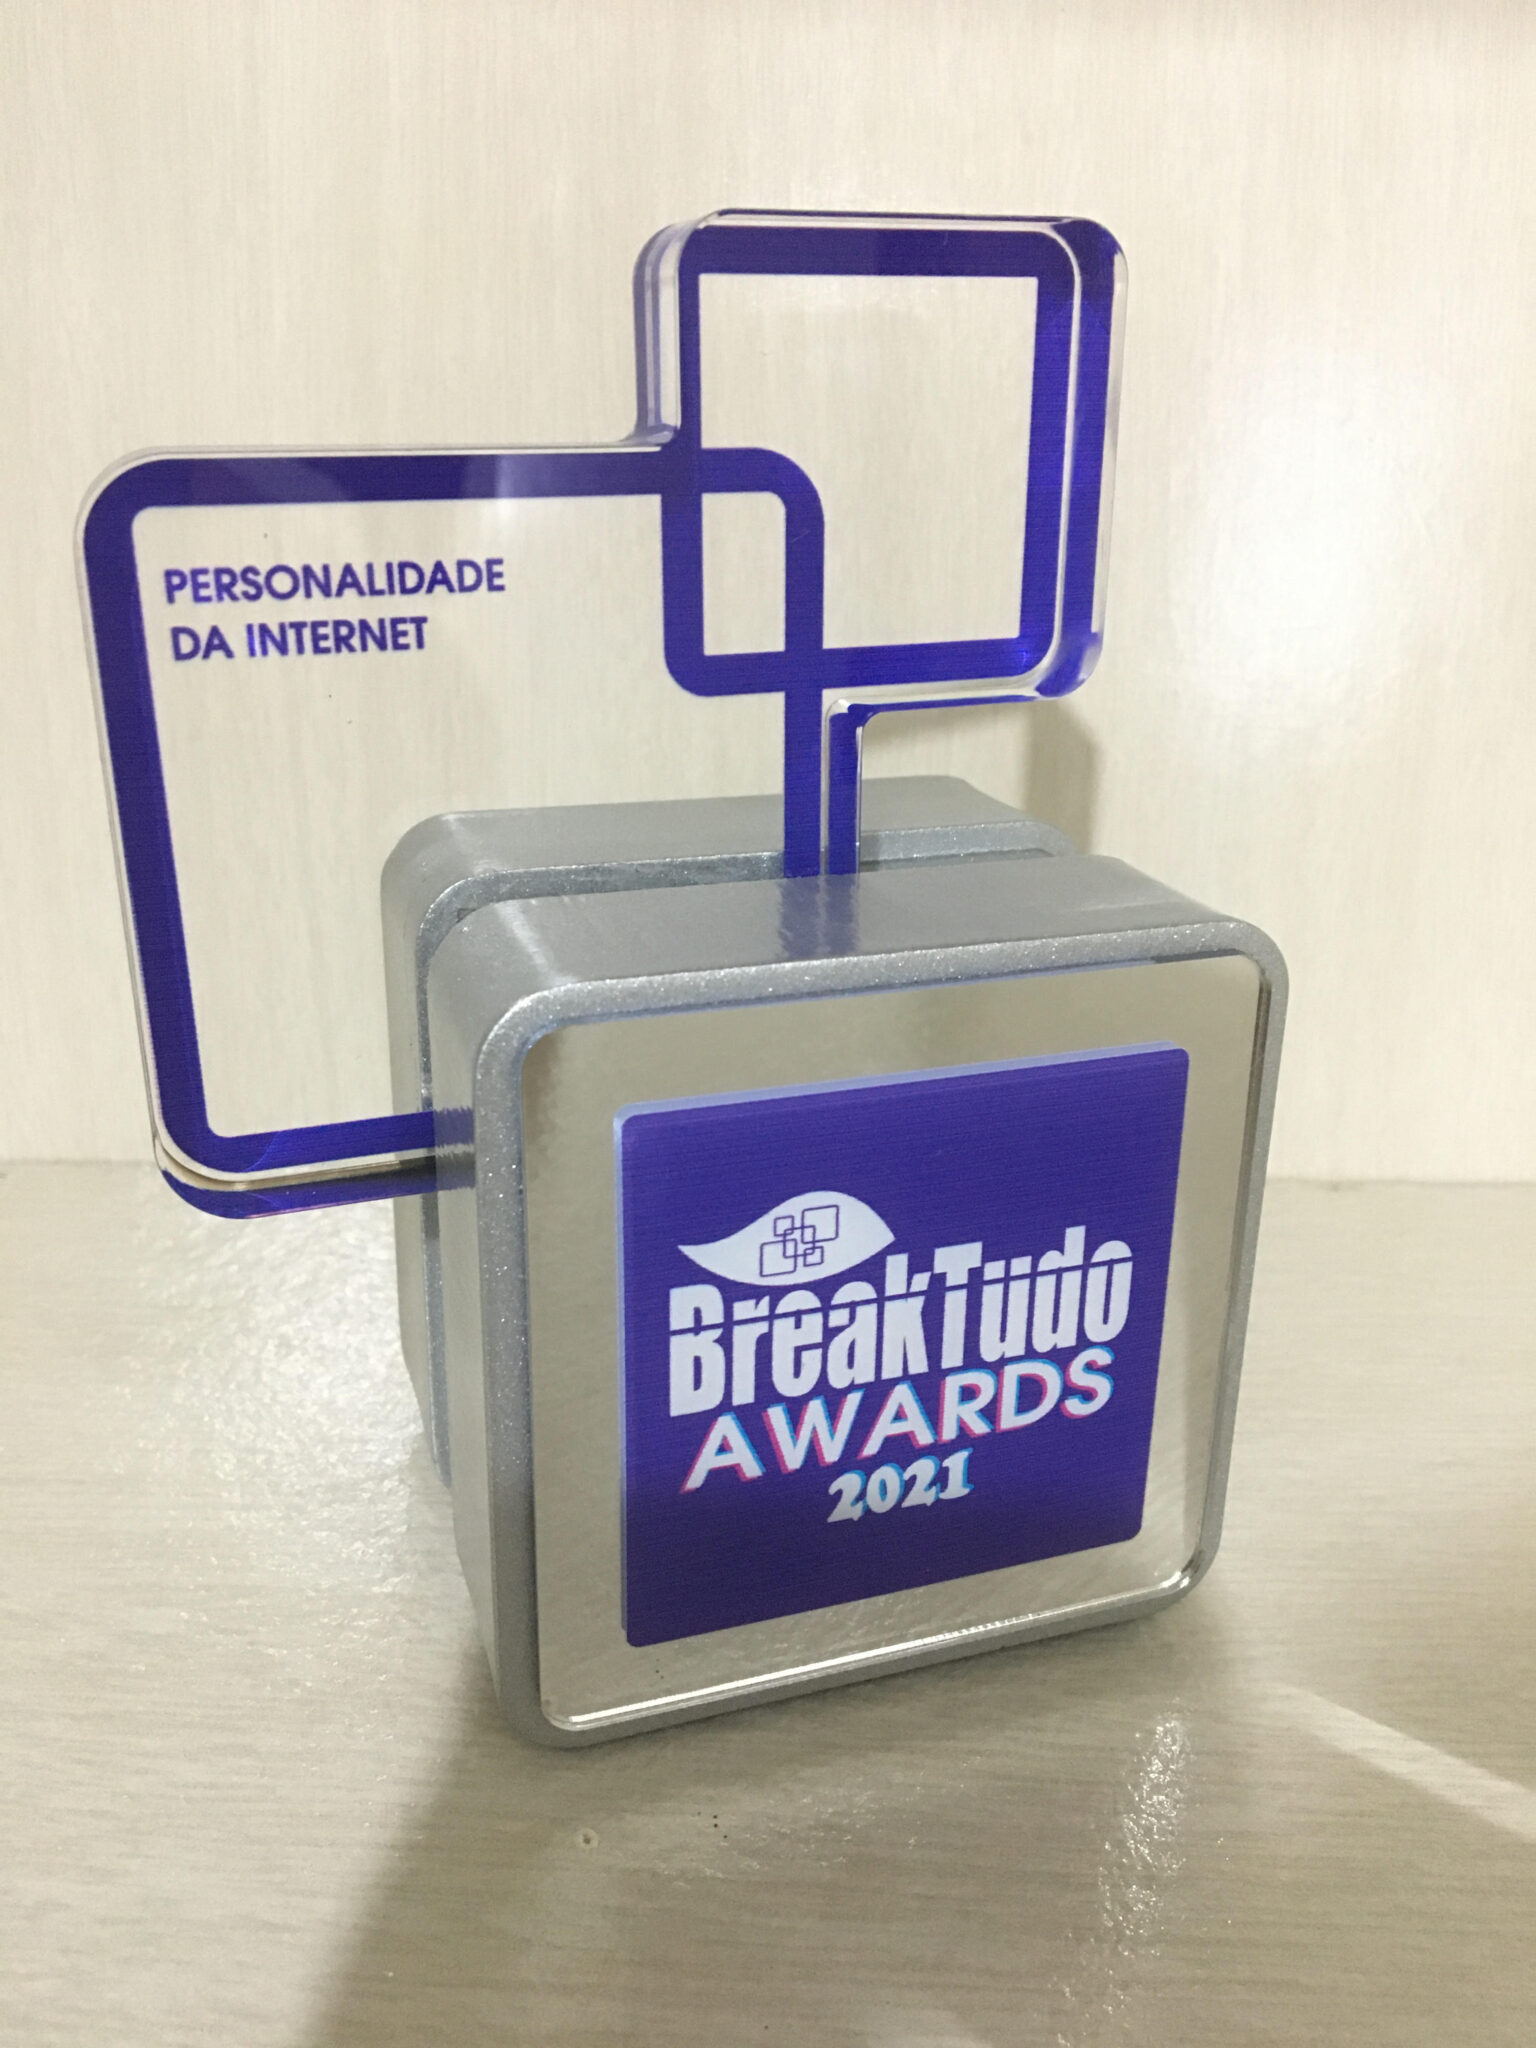 troféu personalidade da breaktudo awards BreakTudo Awards